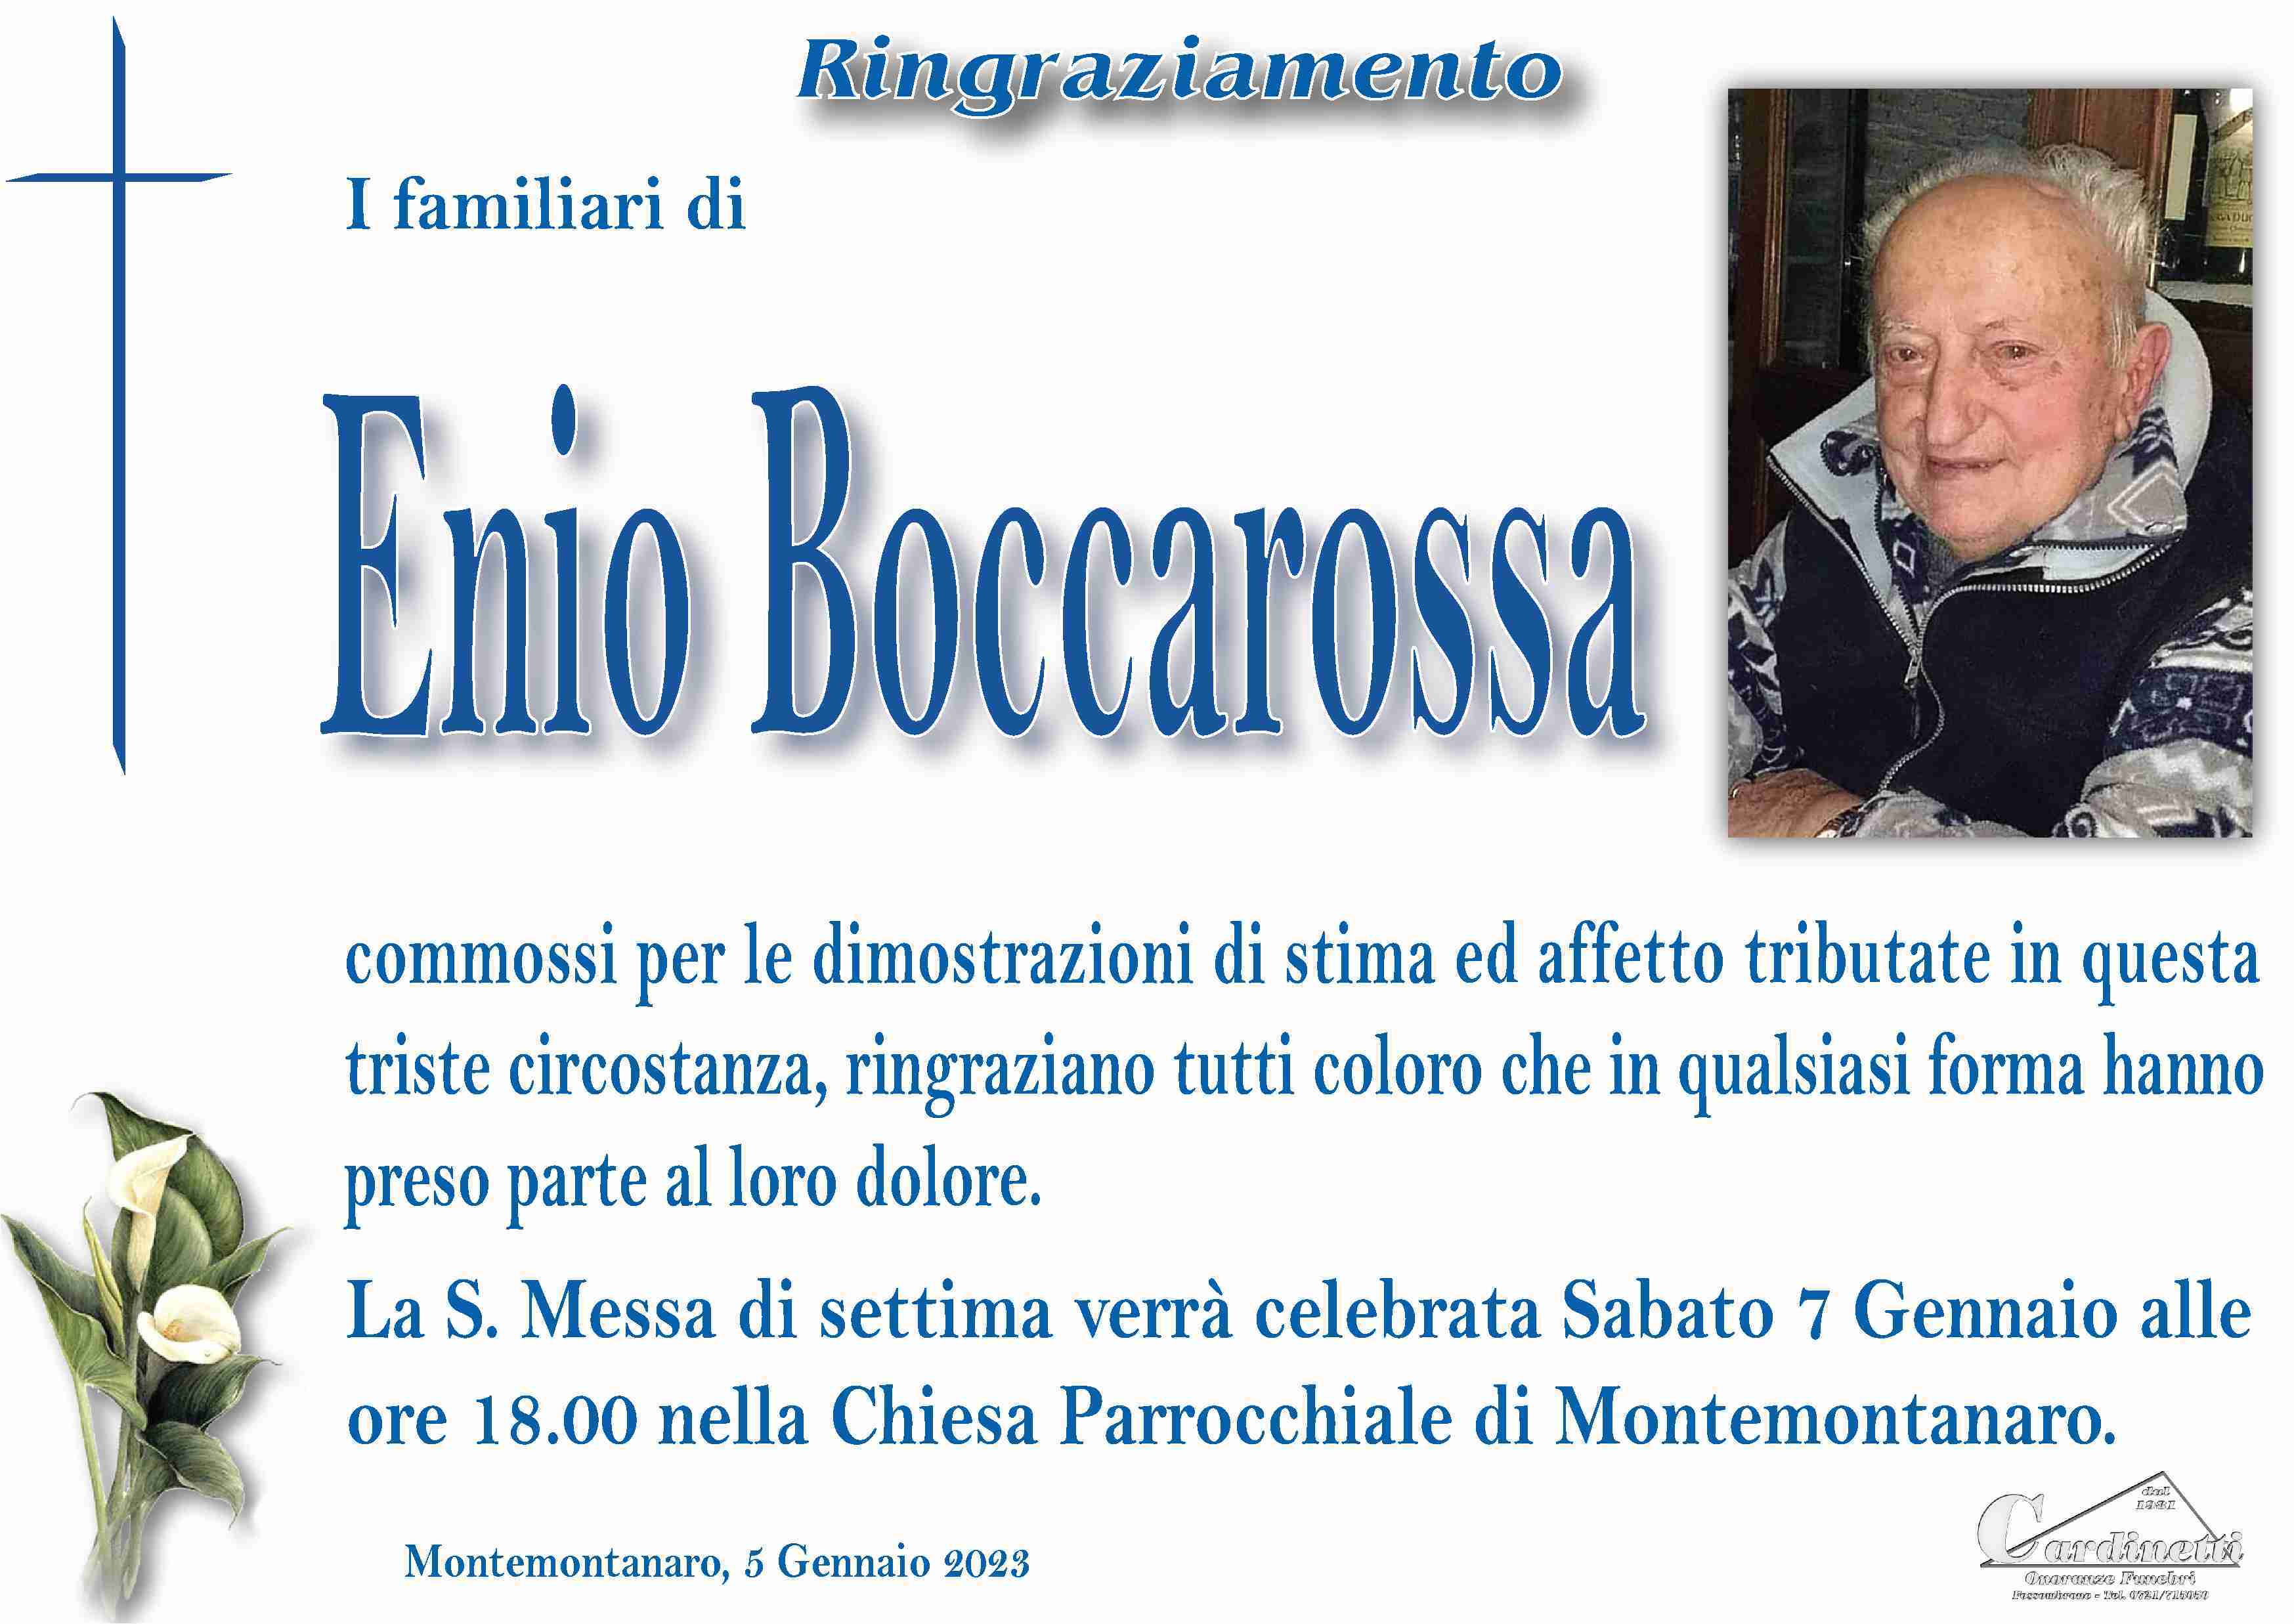 Enio Boccarossa